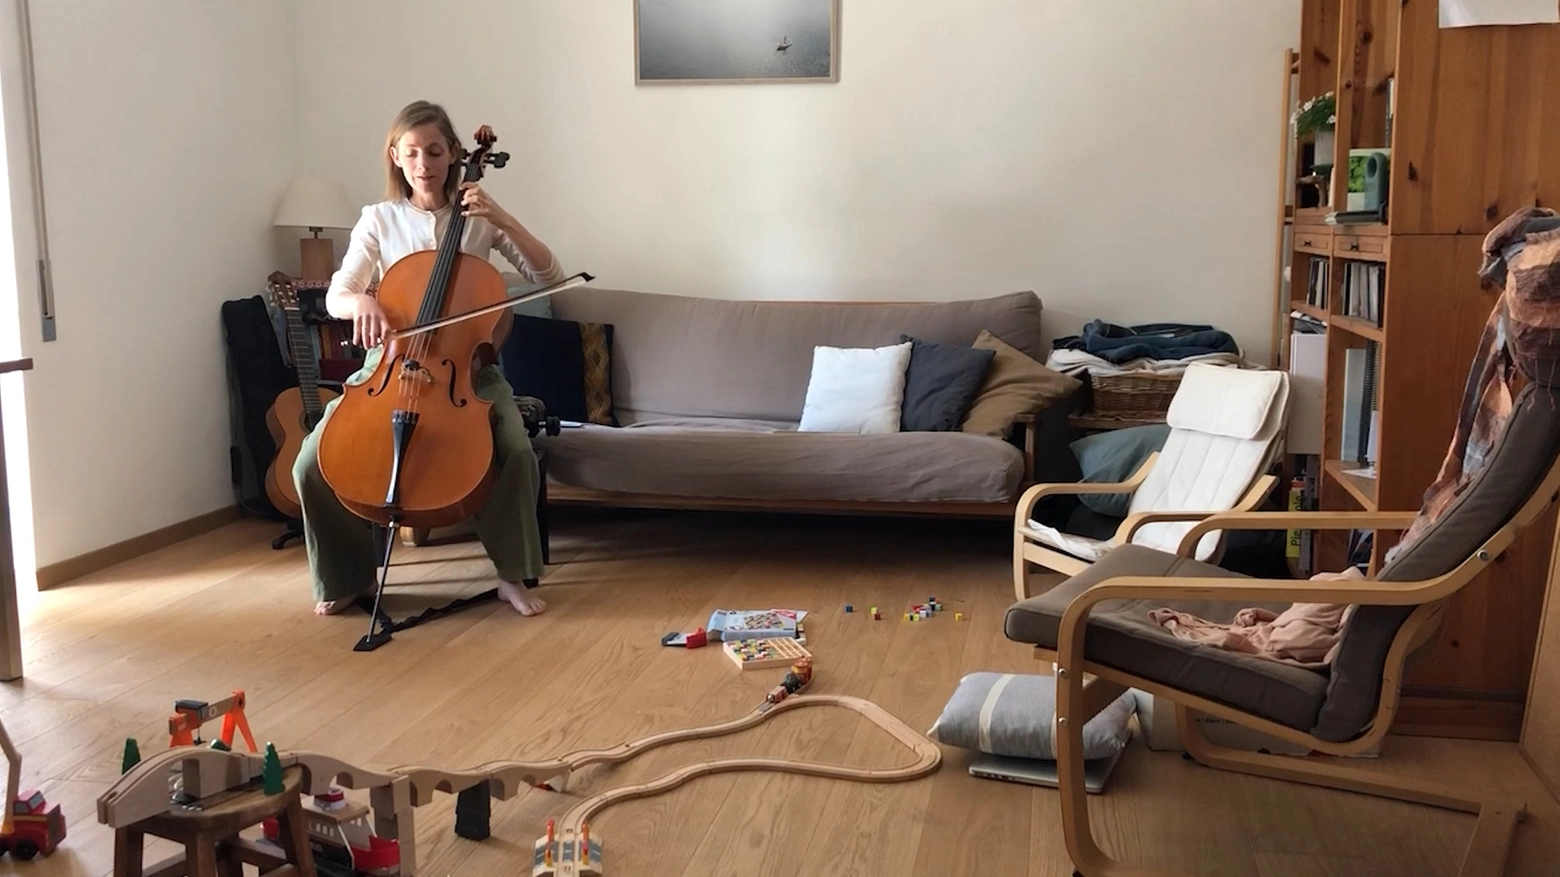 La violoncellista Naomi Berril suona nel suo salotto invaso dai giochi dei bambini